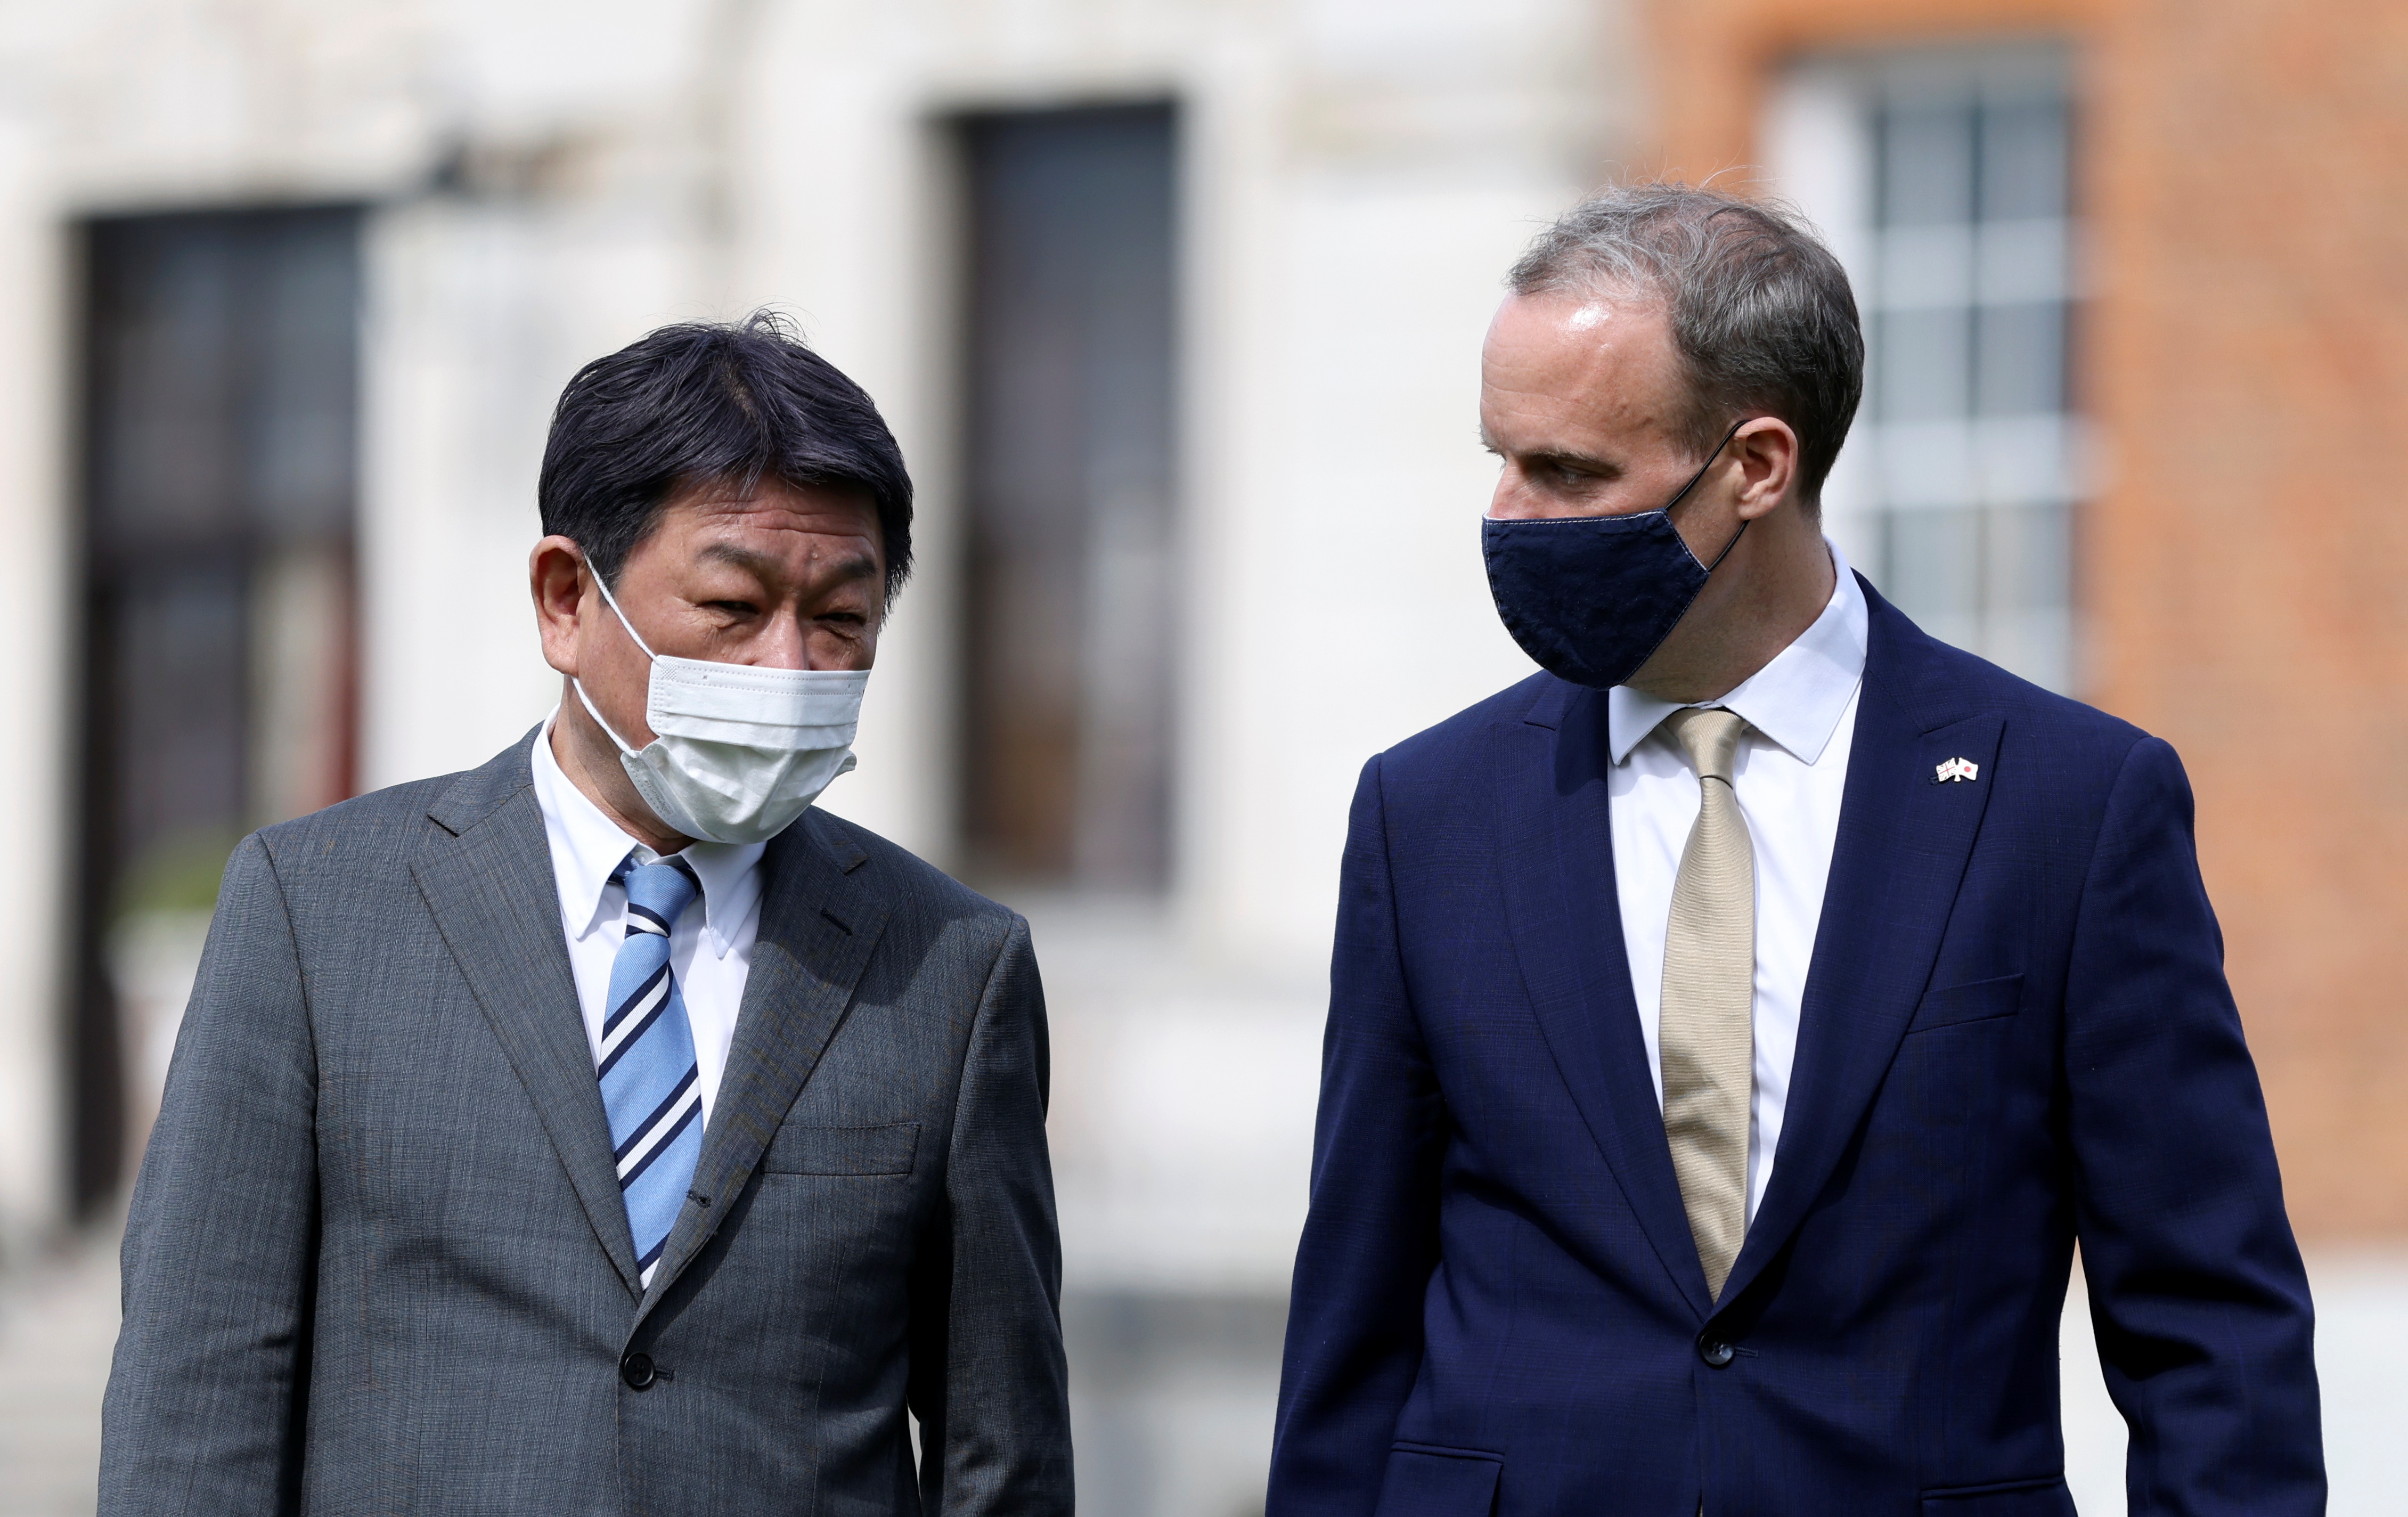 O Ministro das Relações Exteriores da Grã-Bretanha, Dominic Raab, encontra-se com o Ministro das Relações Exteriores do Japão, Toshimitsu Motegi, em Kent, Grã-Bretanha, em 3 de maio de 2021. REUTERS / Tom Nicholson / Pool